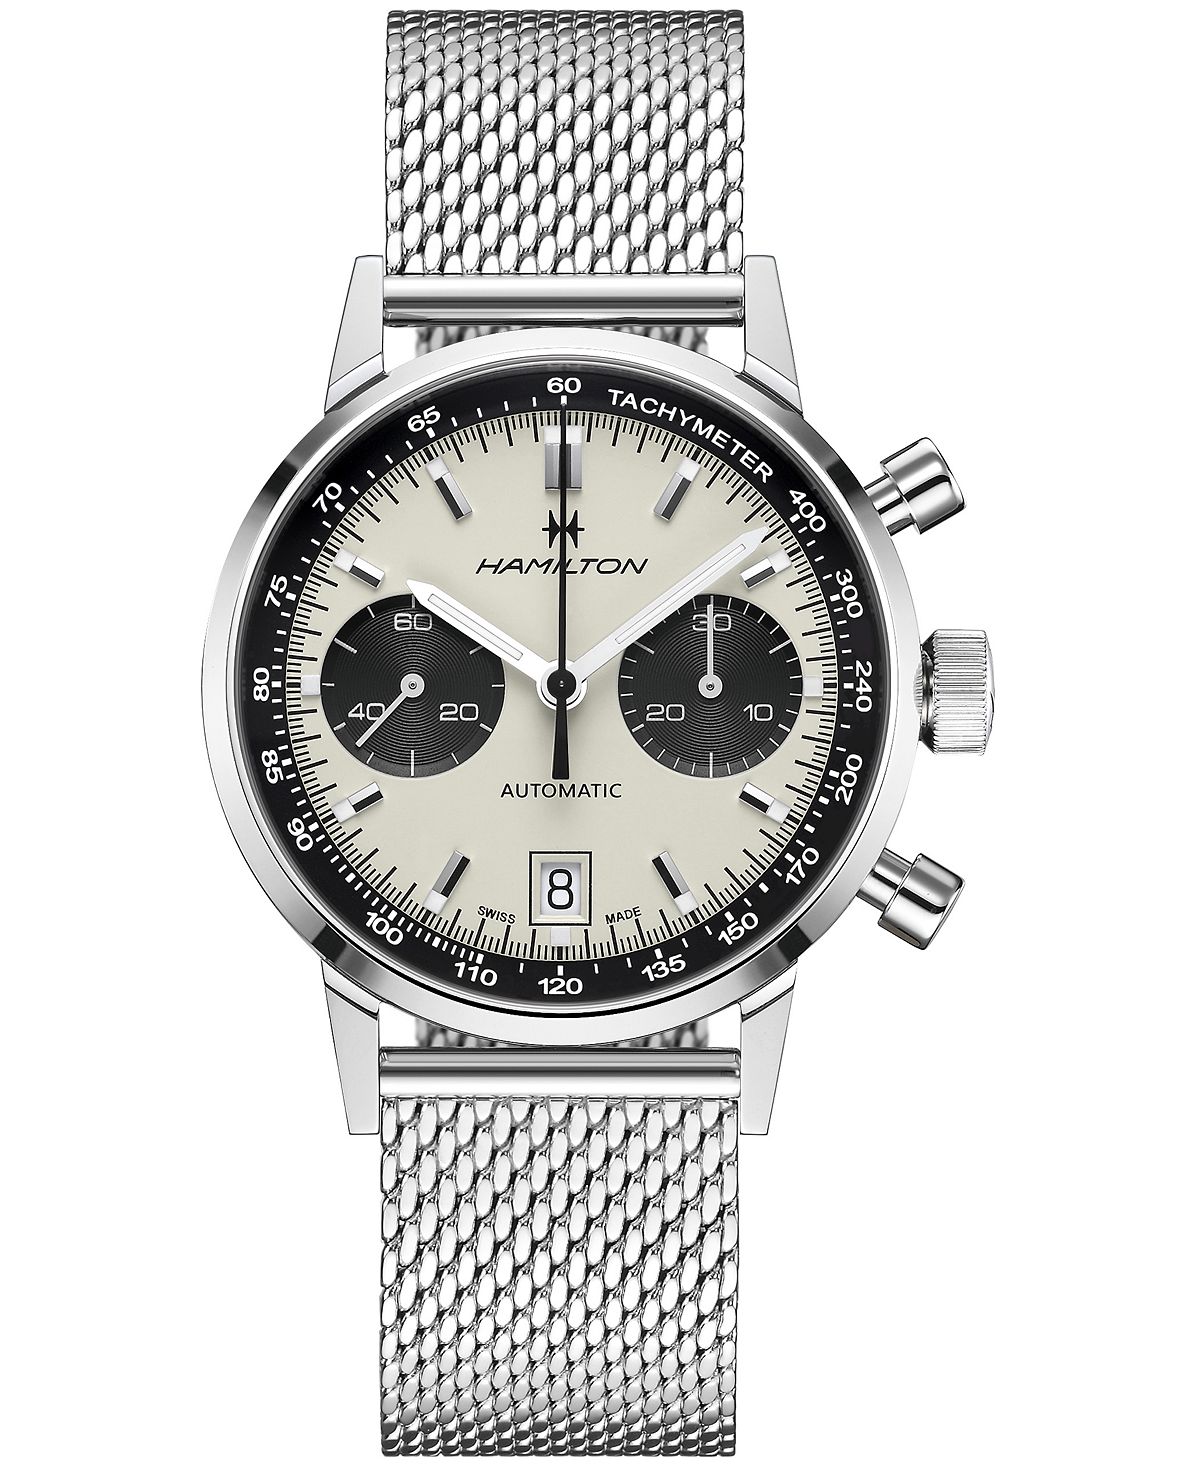 Мужские швейцарские автоматические часы с хронографом Intra-Matic из нержавеющей стали с сетчатым браслетом, 40 мм Hamilton